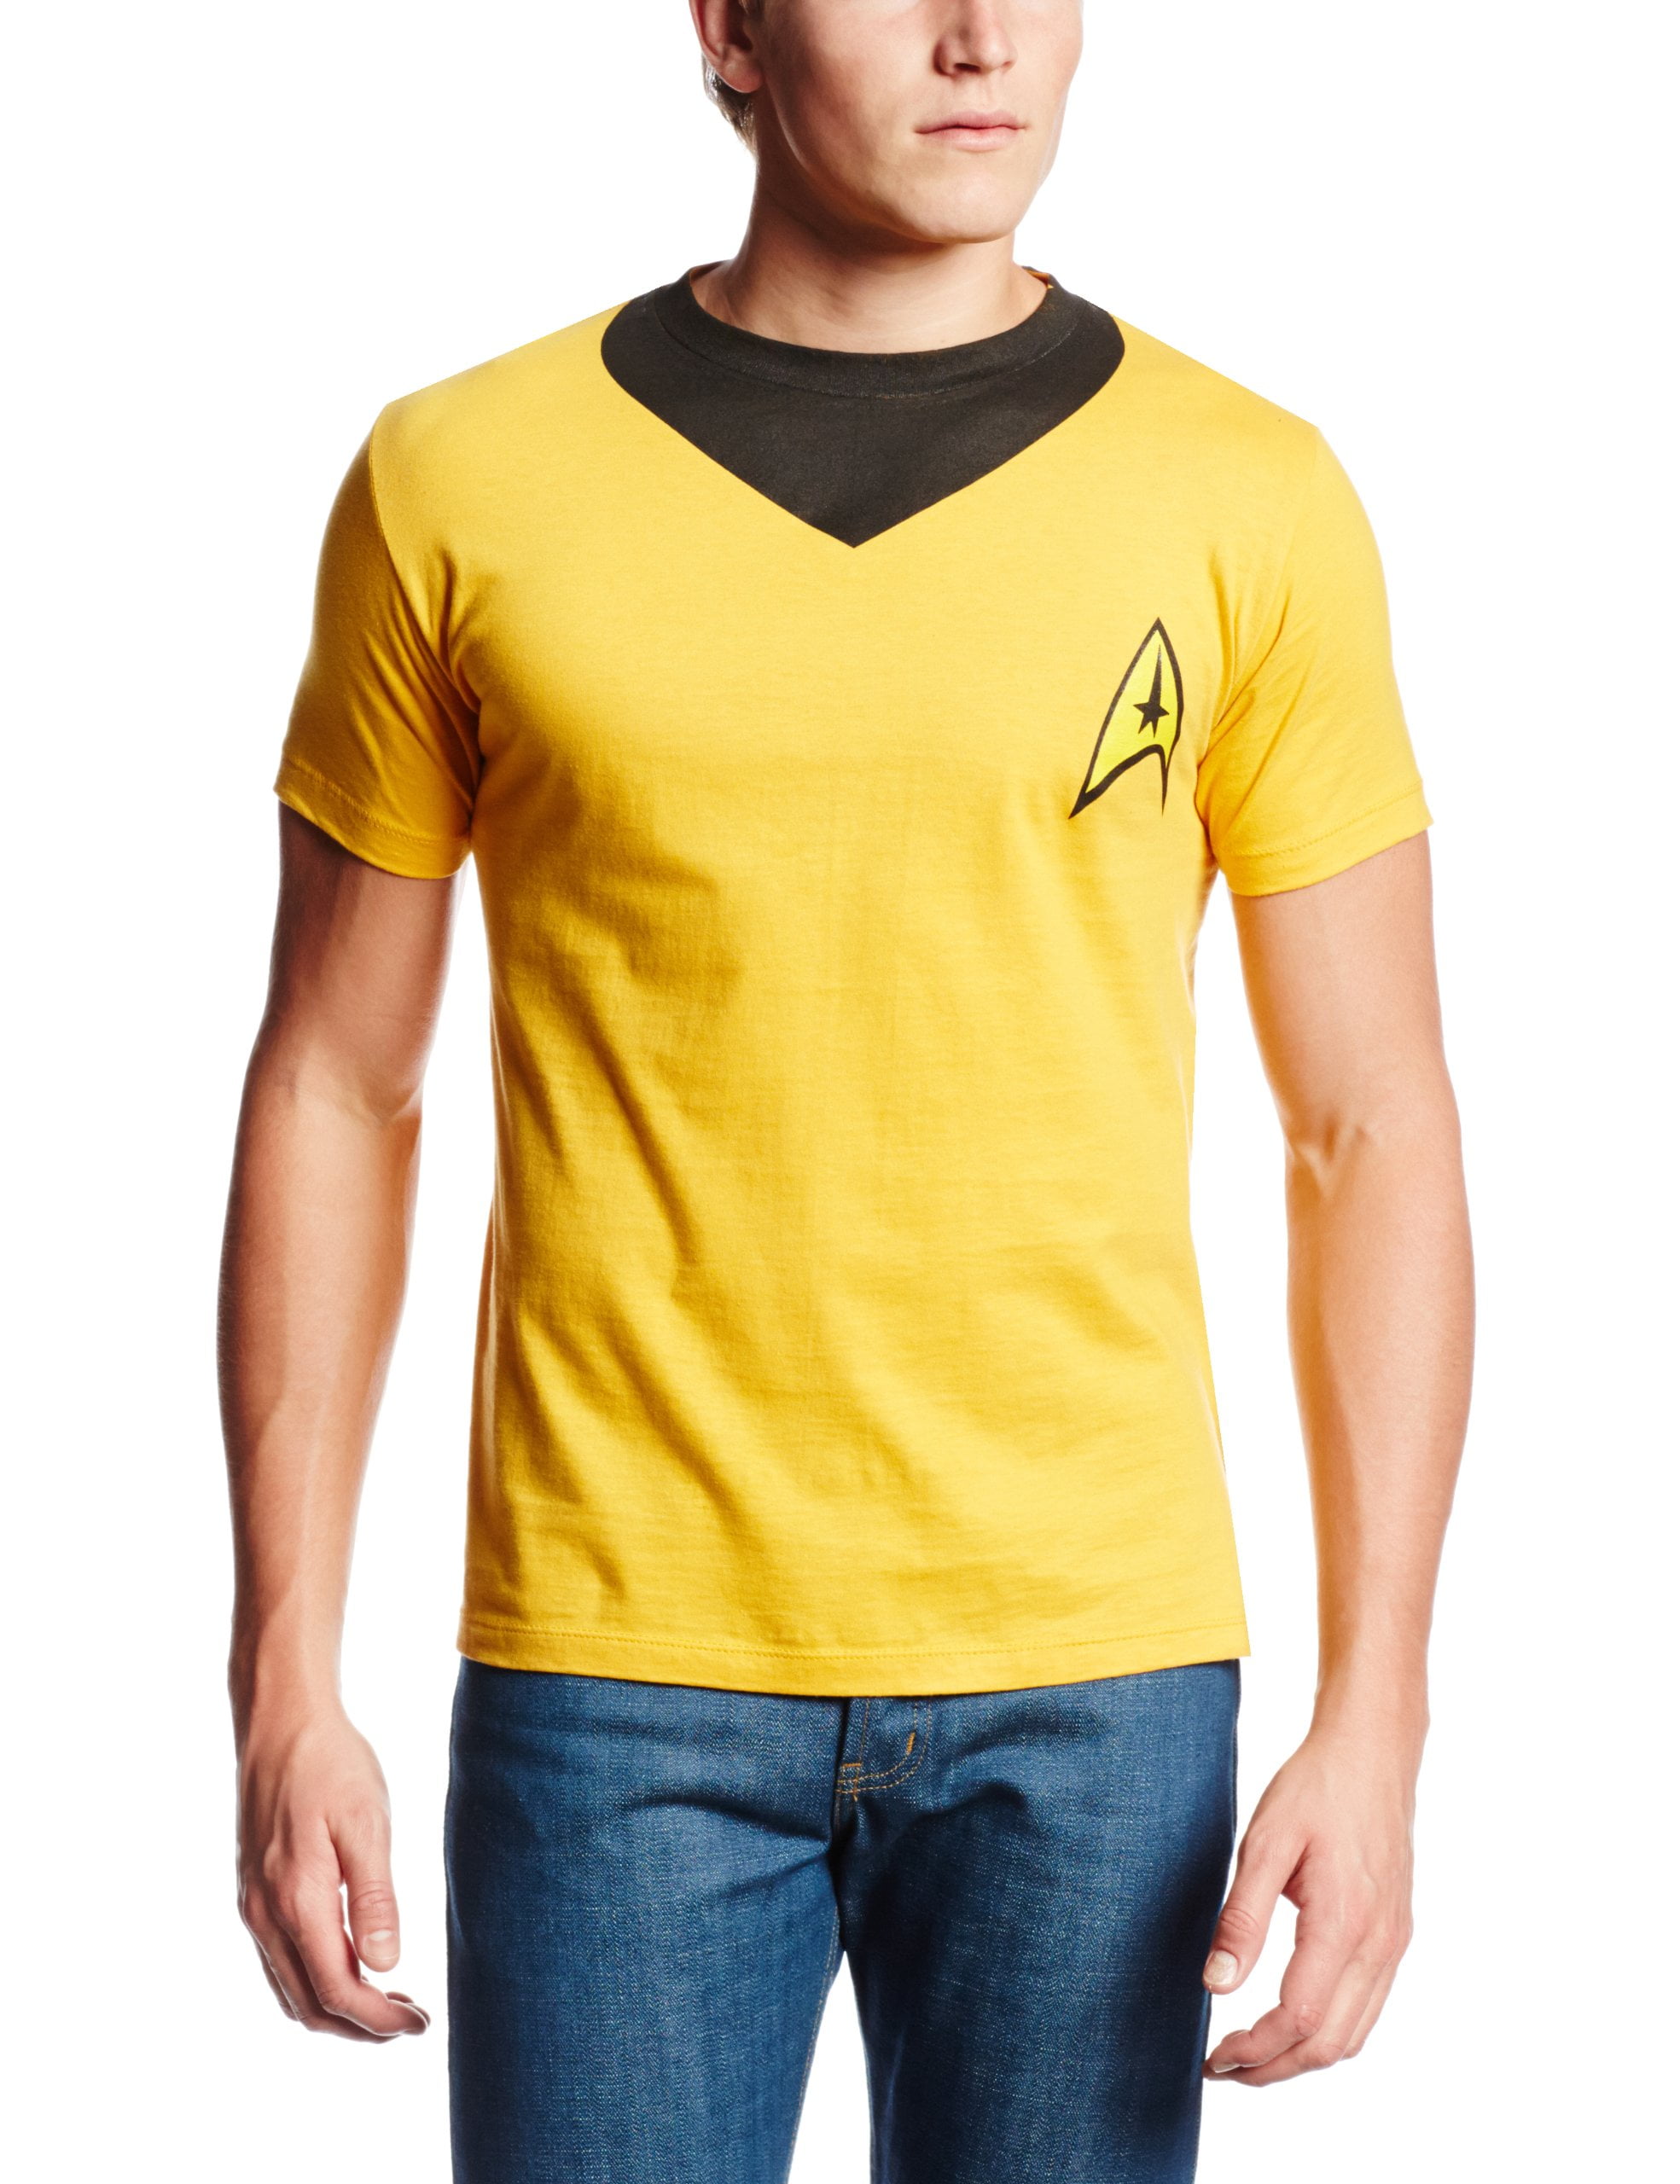 Kirk Star Trek Captain Shirt Men's 